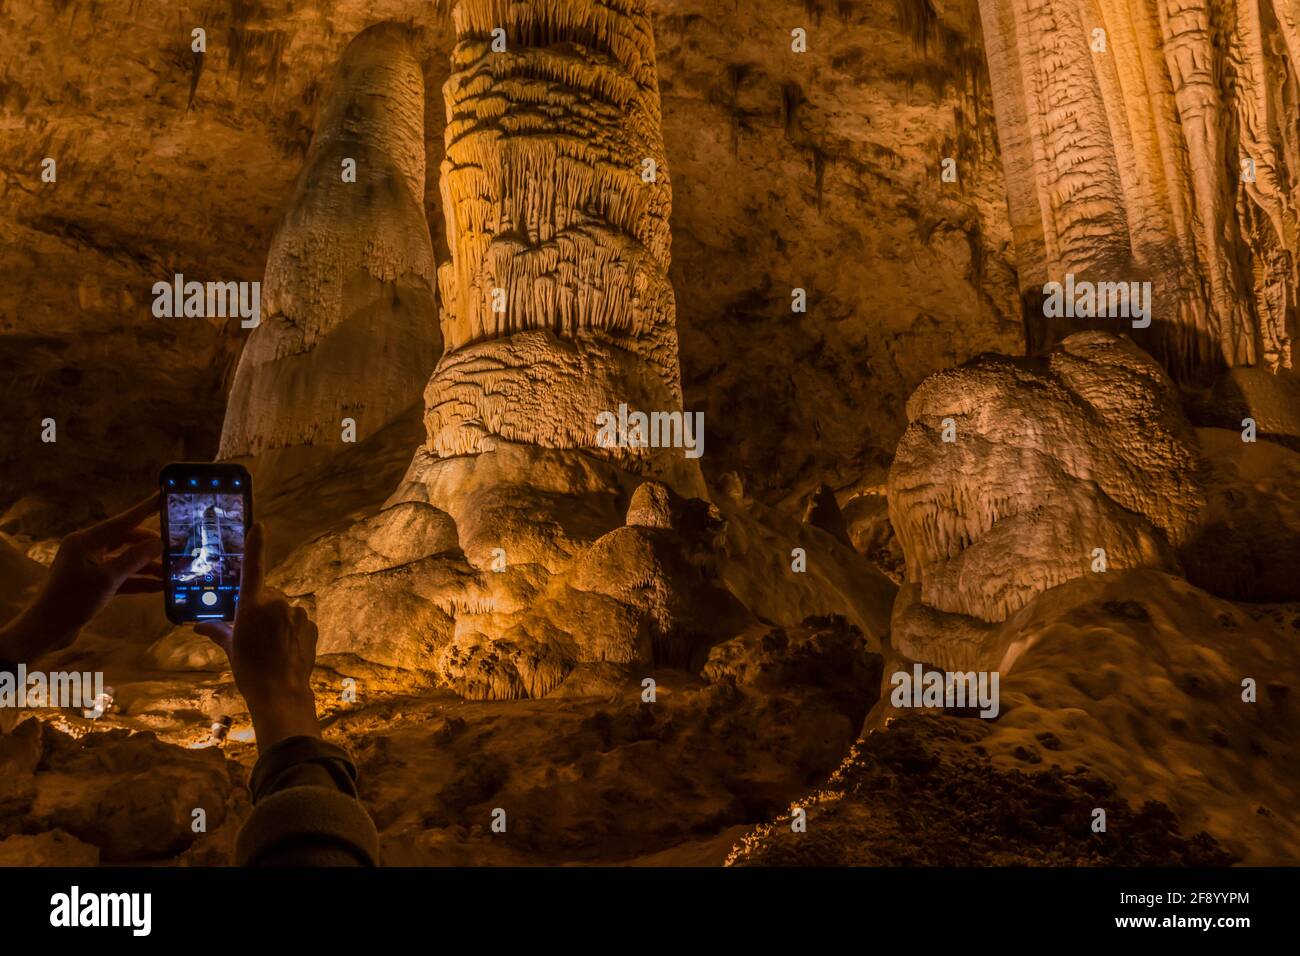 Photographier des formations de tuning dans le Hall of Giants, profondément souterrain, dans le parc national de Carlsbad Caverns, Nouveau-Mexique, États-Unis Banque D'Images